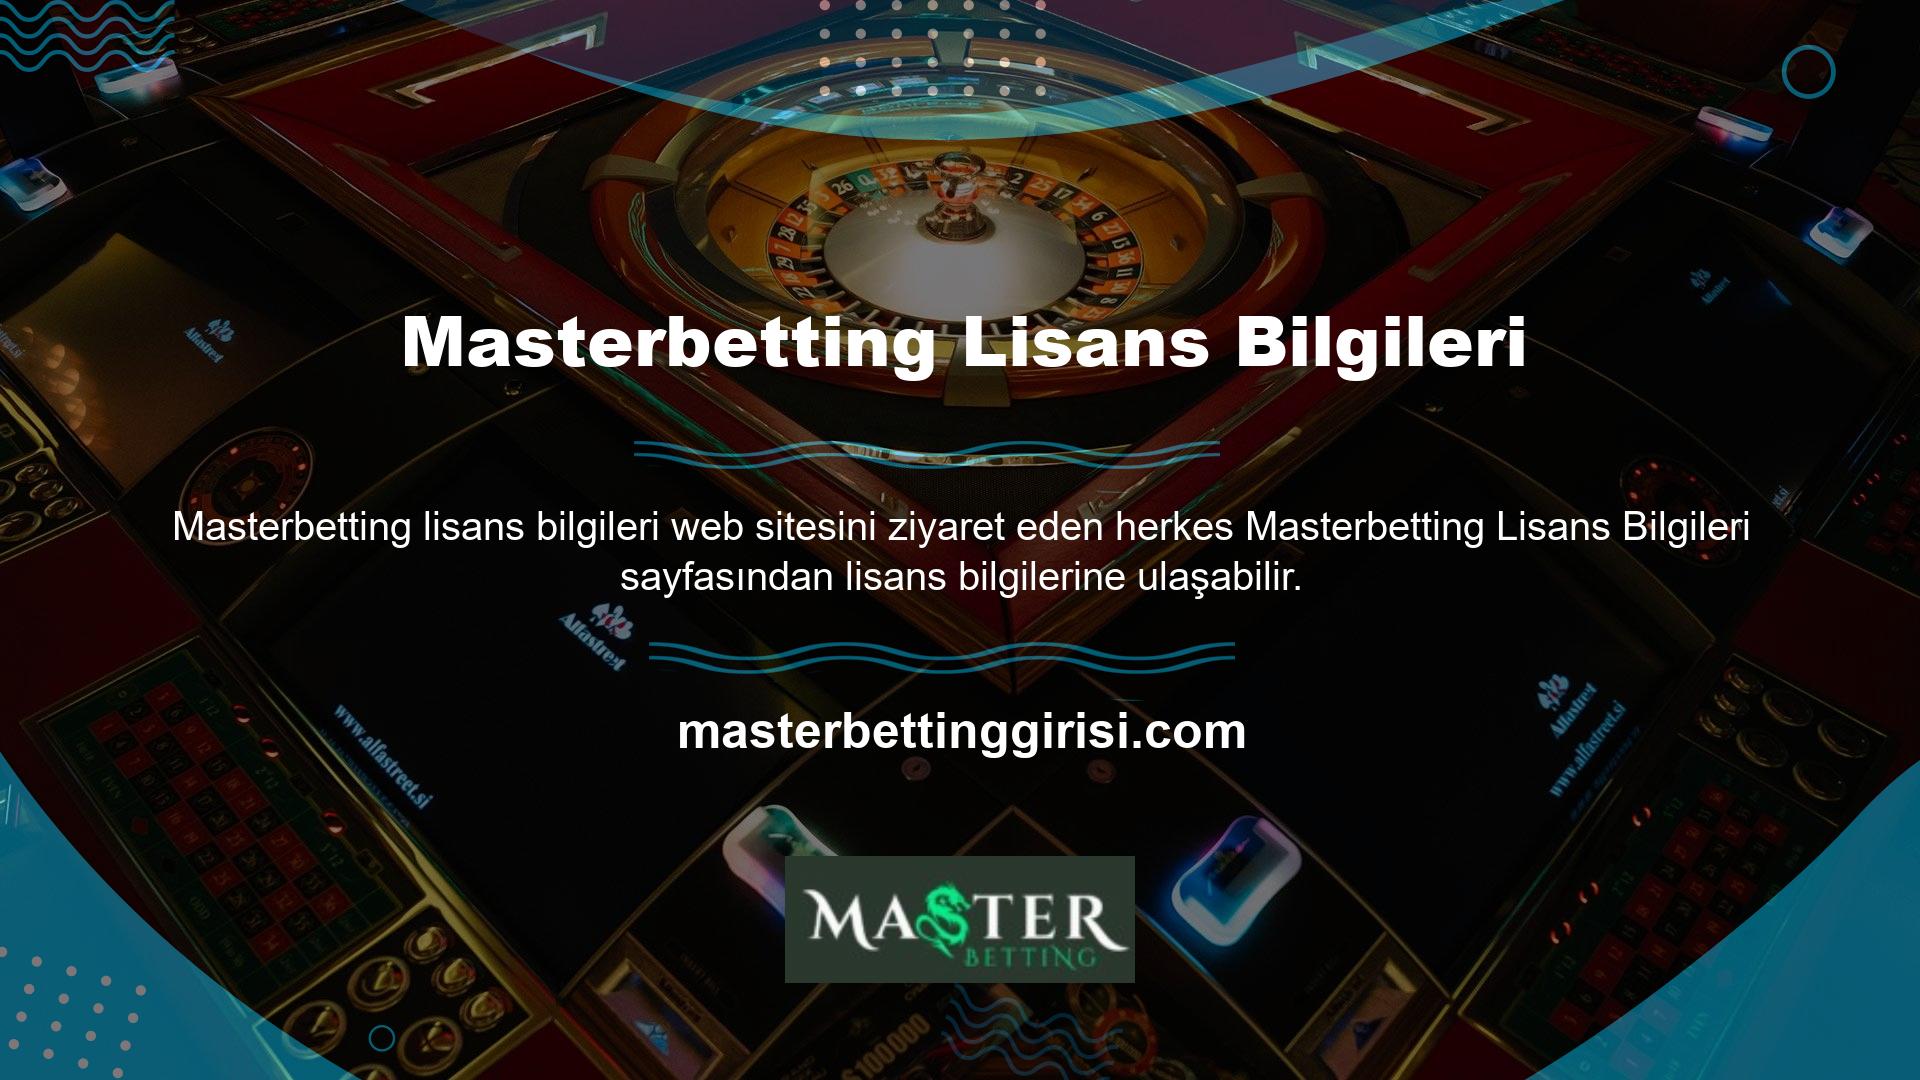 Türk casino piyasası dolandırıcı bahisçiler yüzünden çok kötü durumda